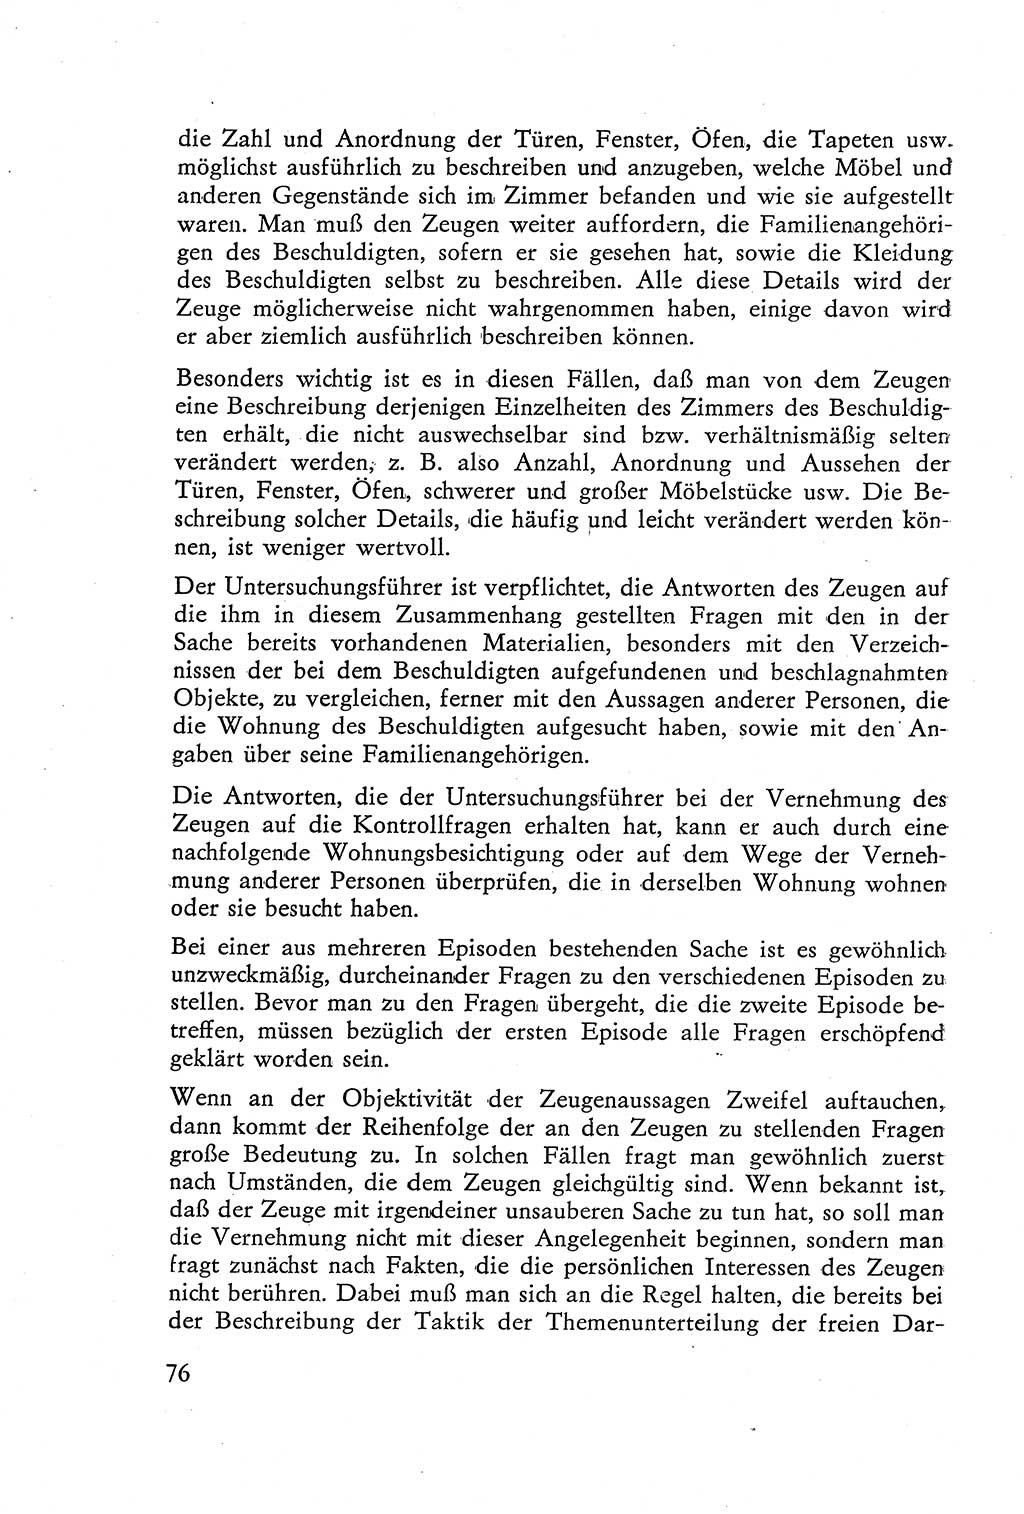 Die Vernehmung [Deutsche Demokratische Republik (DDR)] 1960, Seite 76 (Vern. DDR 1960, S. 76)